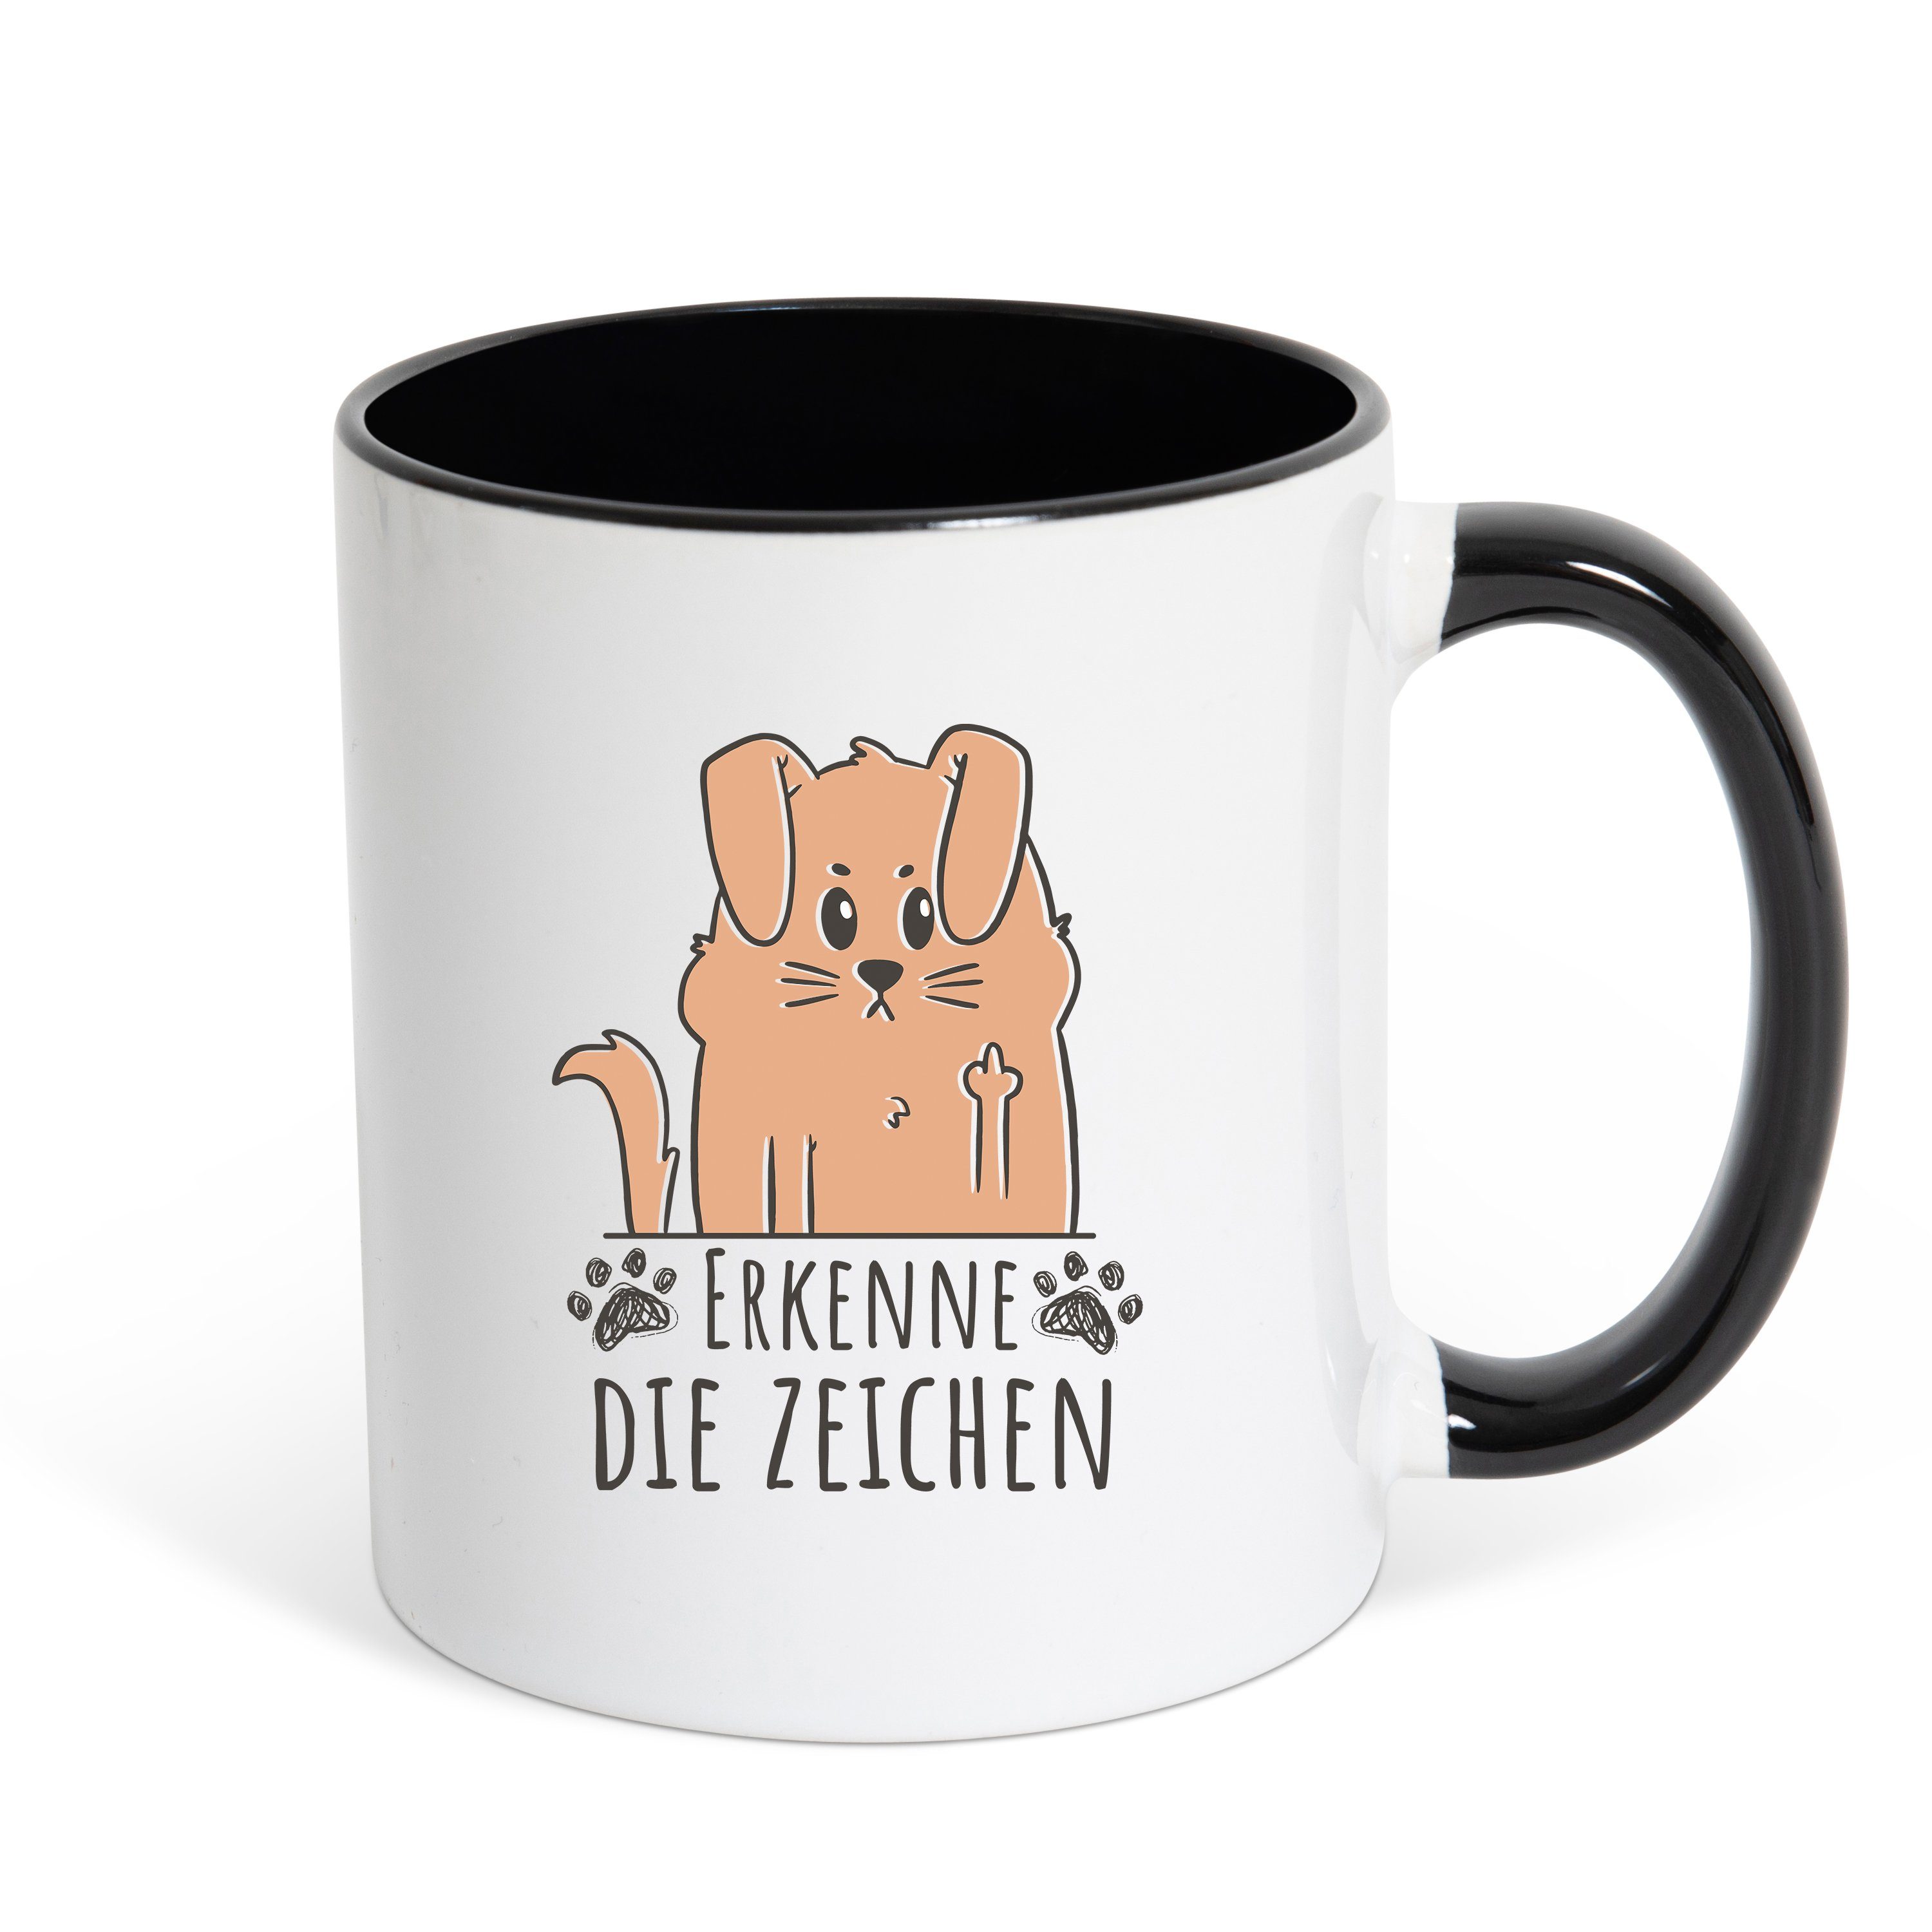 Youth Designz Tasse Erkenne Die Zeichen Kaffeetasse Geschenk, Keramik, mit lustigem Print Weiß/Schwarz